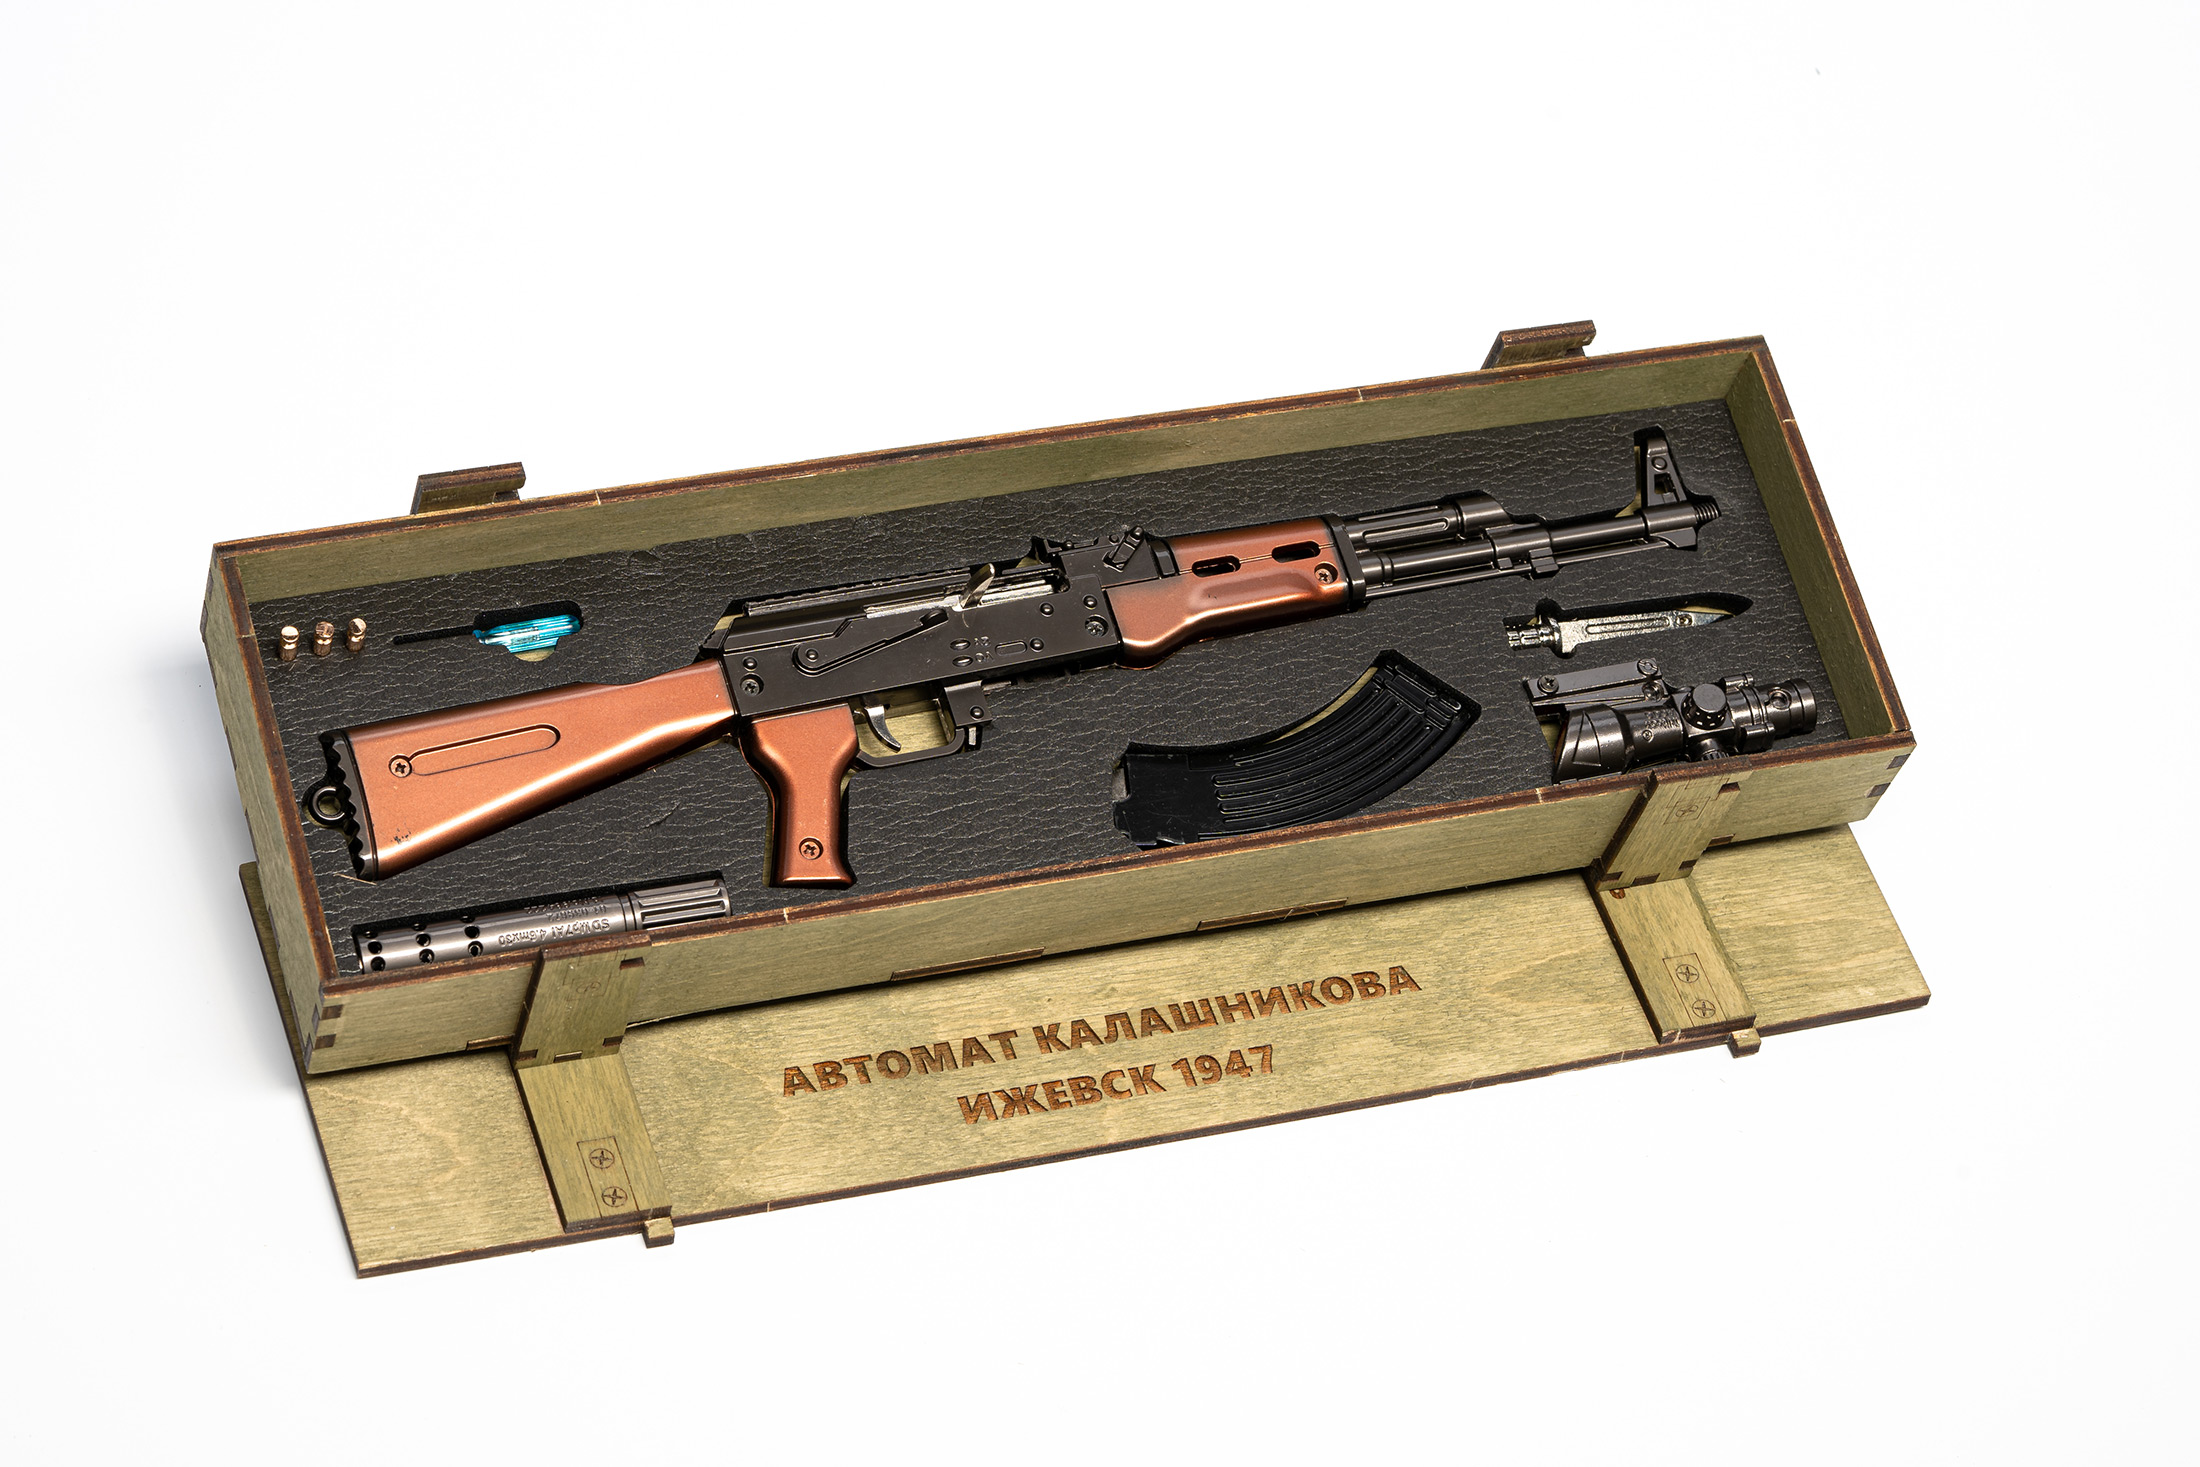 Сувенирное оружие макет Автомата Калашников АК-47 в ящике, 36 см (Хаки)<br>Souvenir model of the Kalashnikov AK-47 in a wooden box, 36 cm